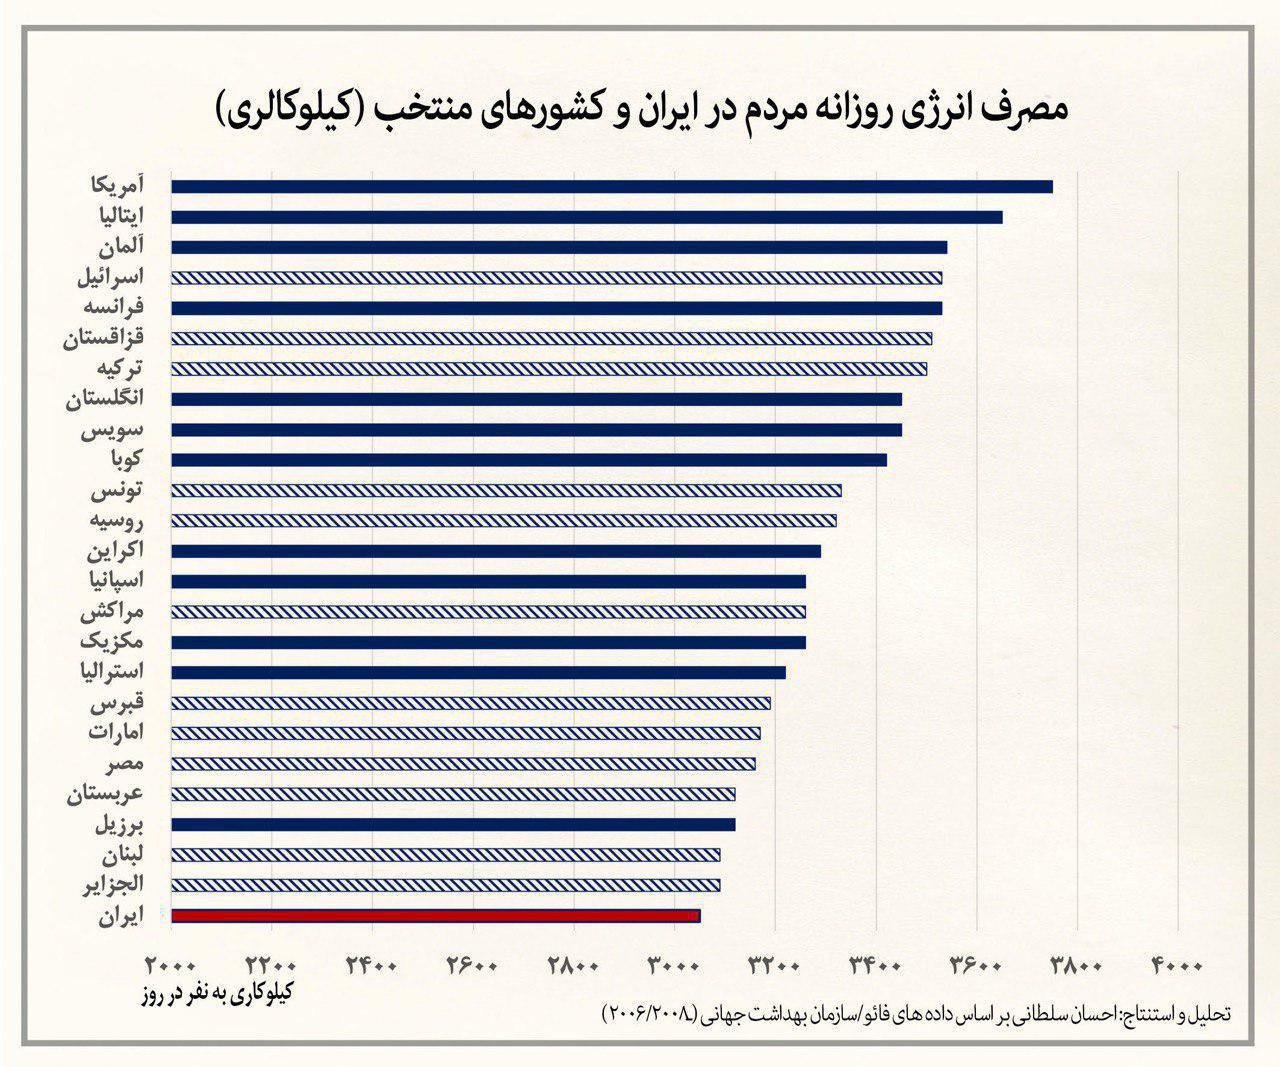 مردم ایران چقدر کالری مصرف می کنند؟